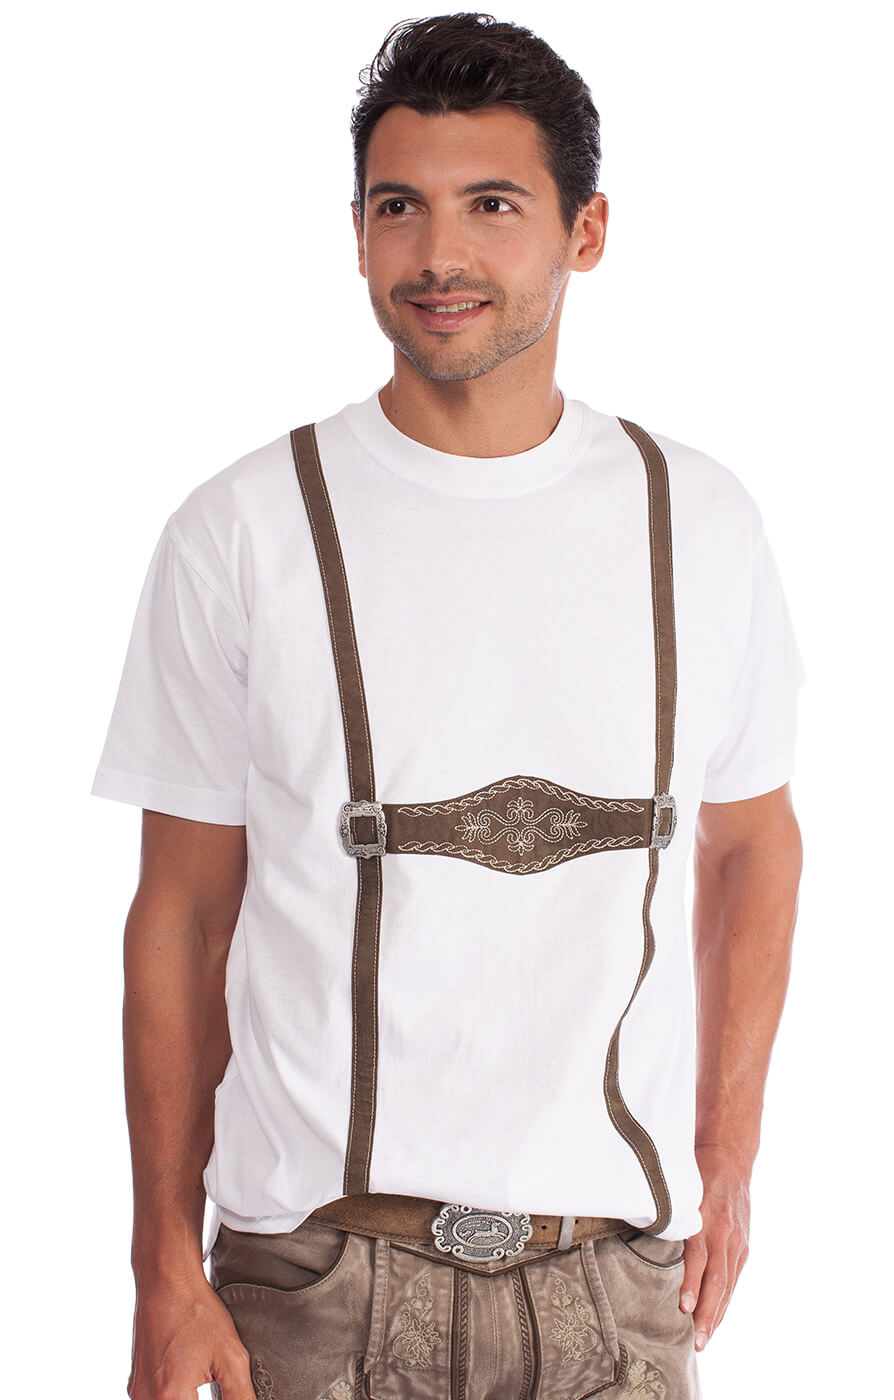 Oktoberfest T-Shirt Shirt Hosenträger für Lederhose S M L XL XXL 3XL 4XL 5XL